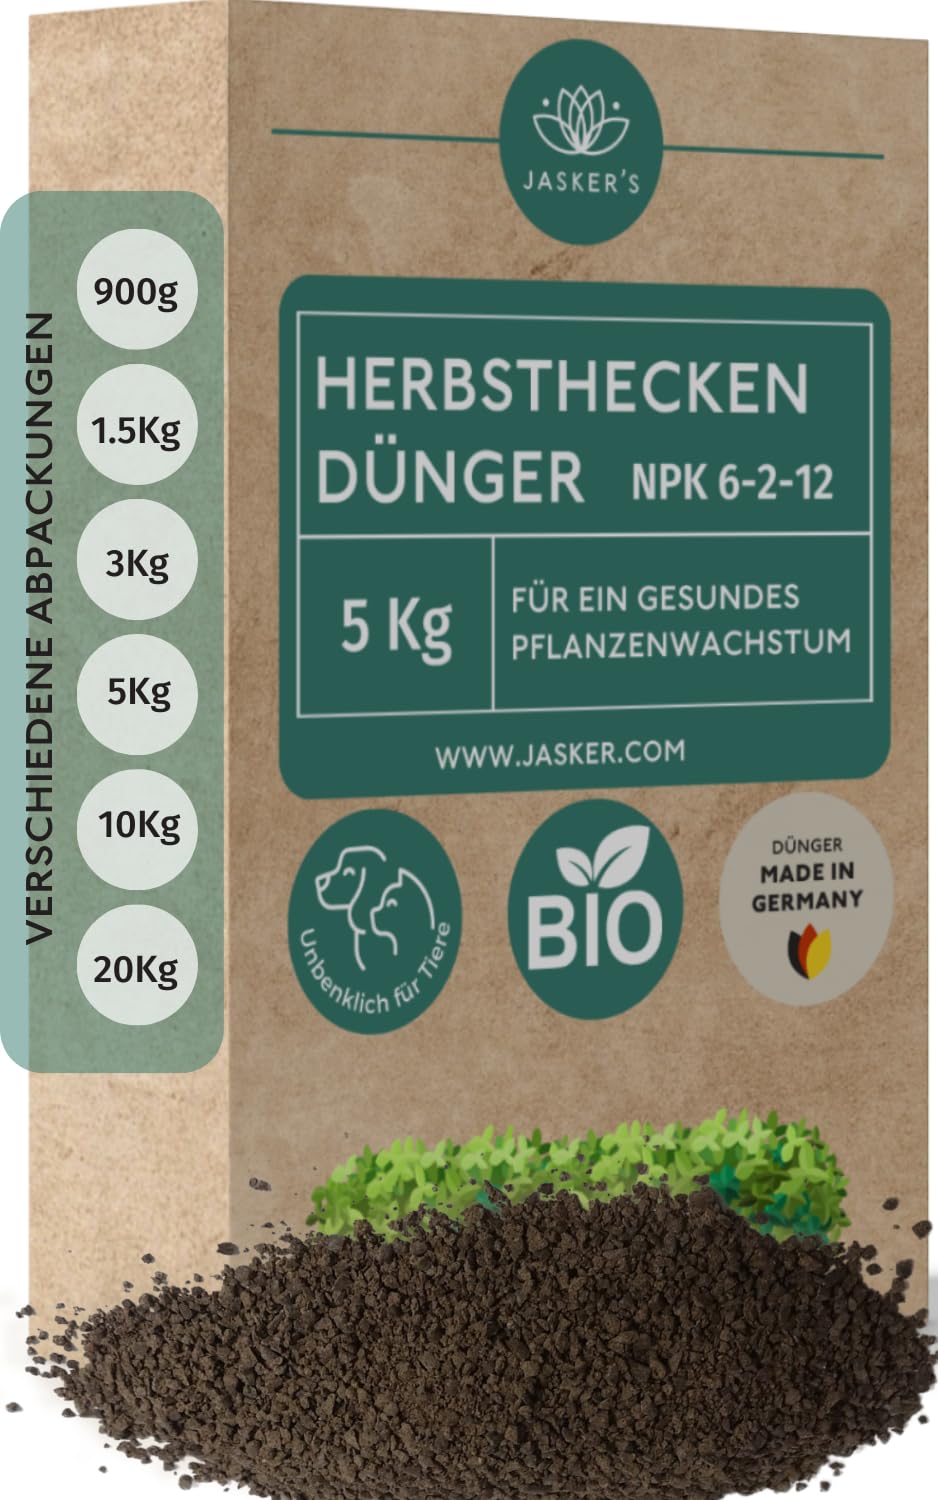 Bio Heckendünger 5 Kg - 100% Tierfreundlicher Pflanzendünger - Ideal als Dünger für Buchsbaum, Nadelbäume, Thuja Hecken - Viel Kalium & Magnesium für frischgrüne Blätter